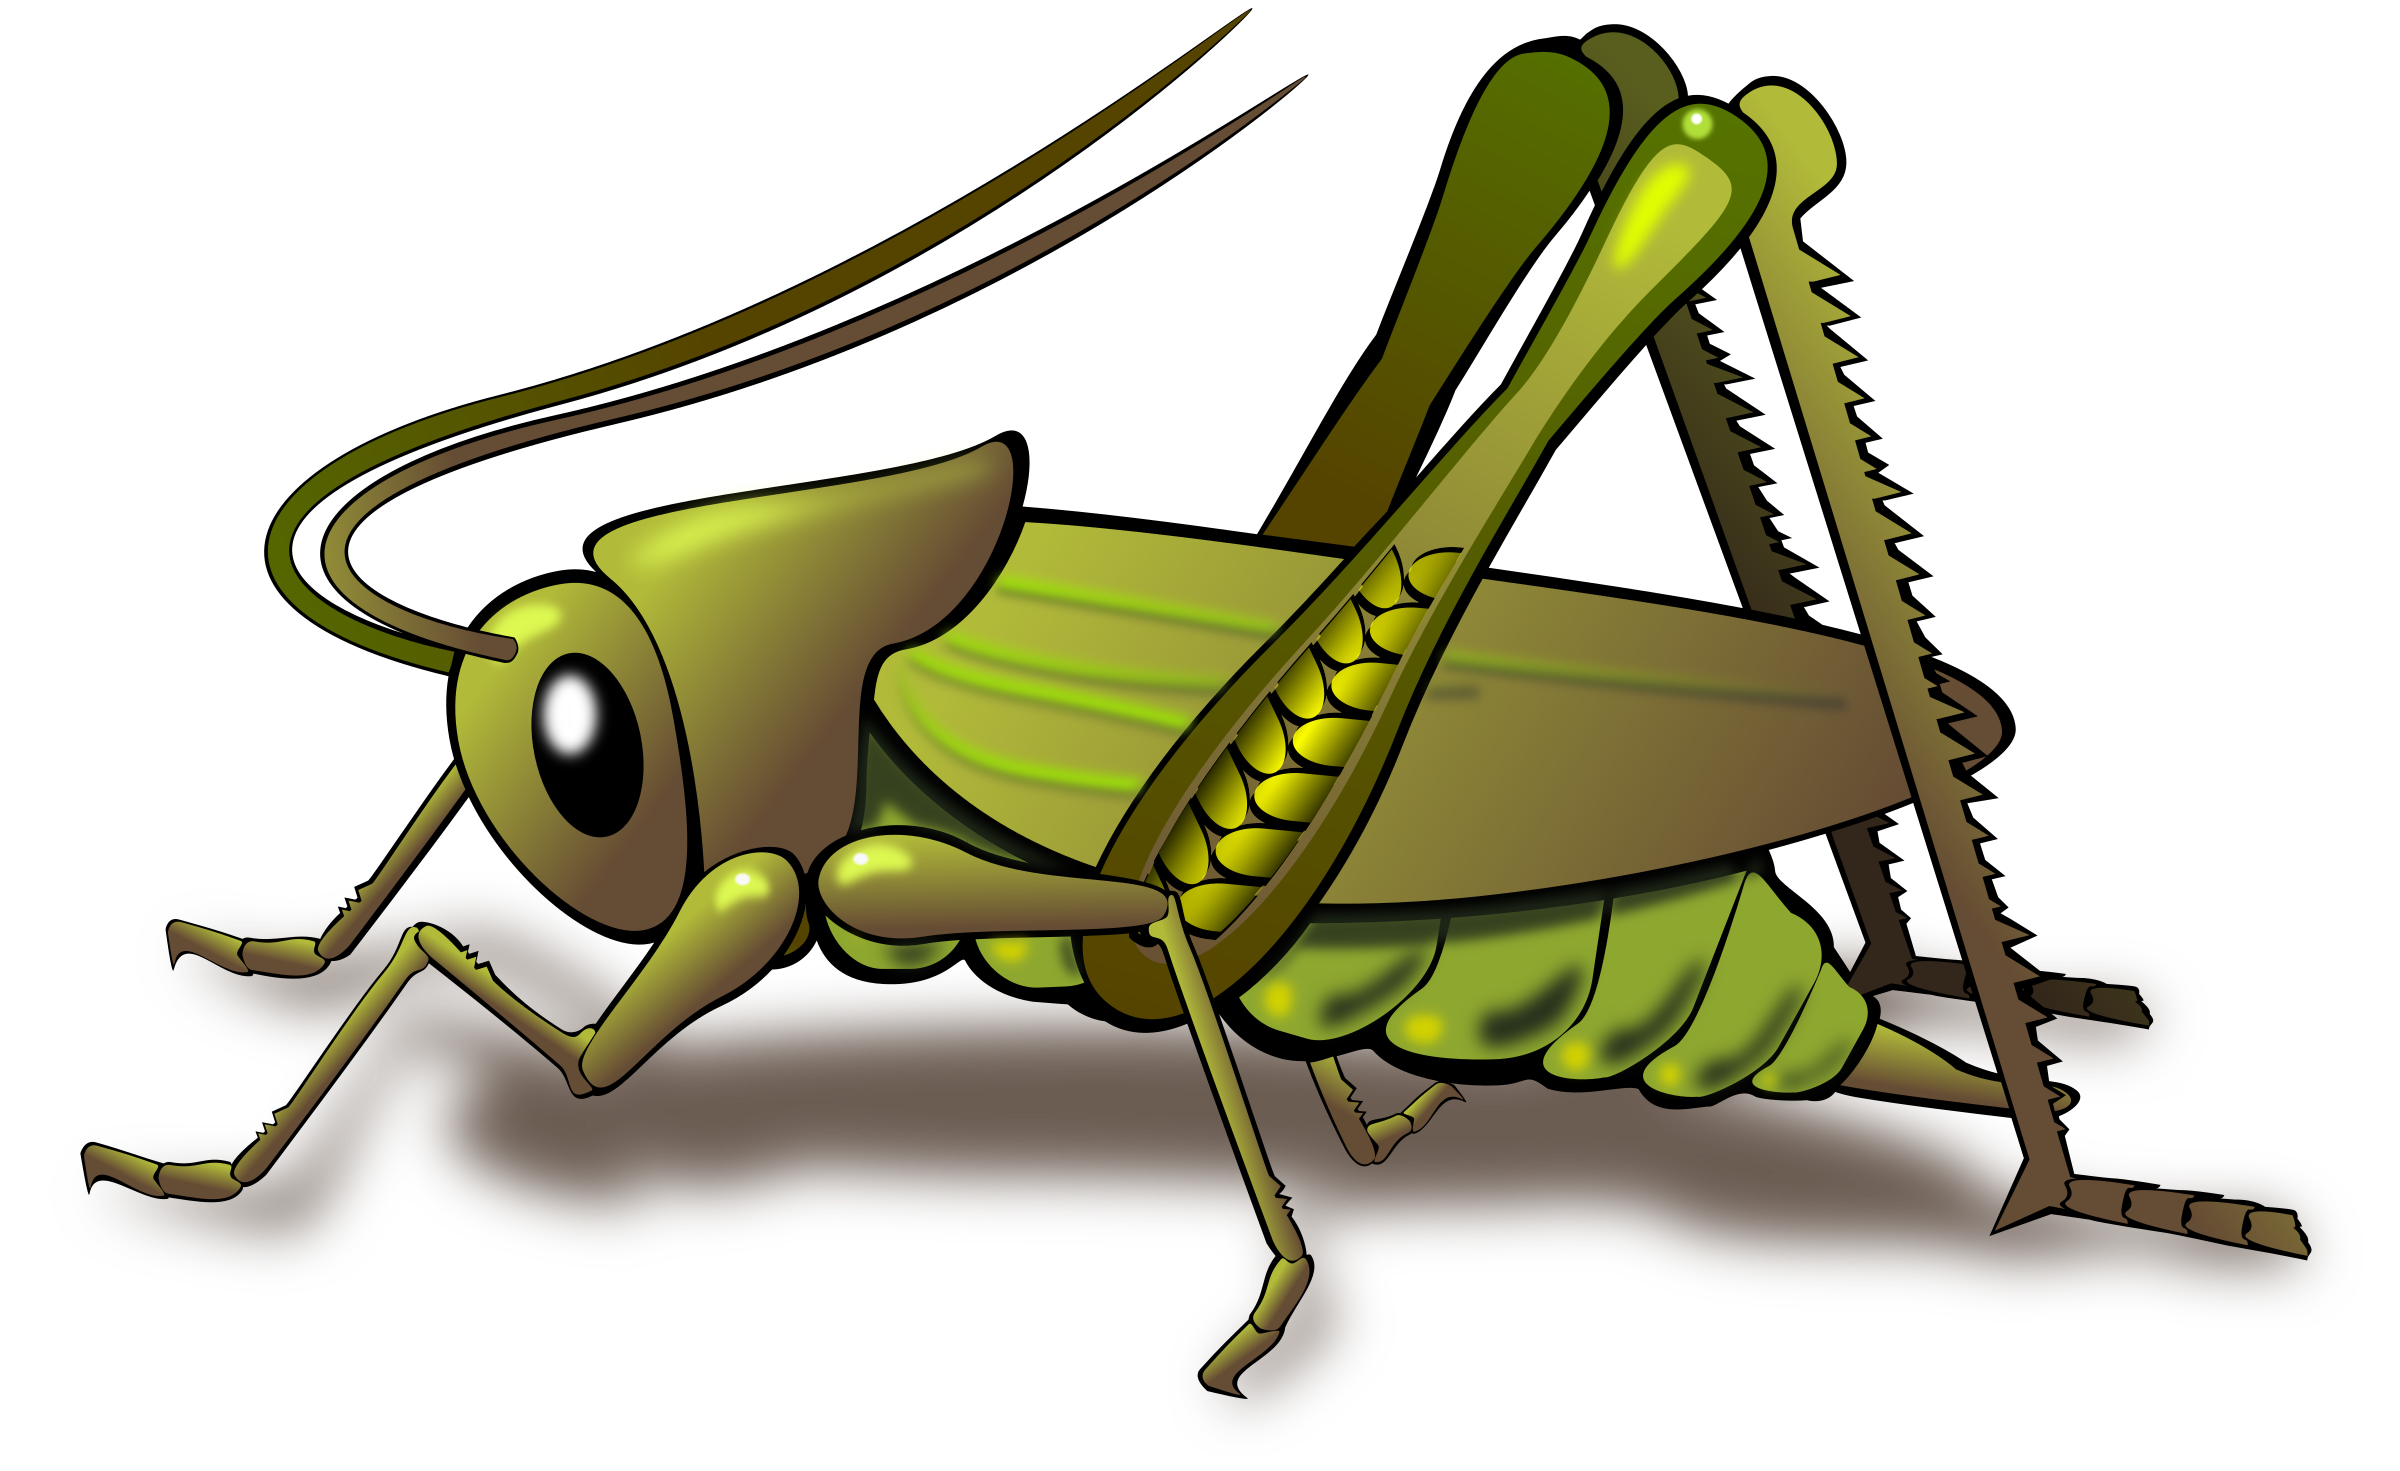 Grasshopper Clip Art Valentin